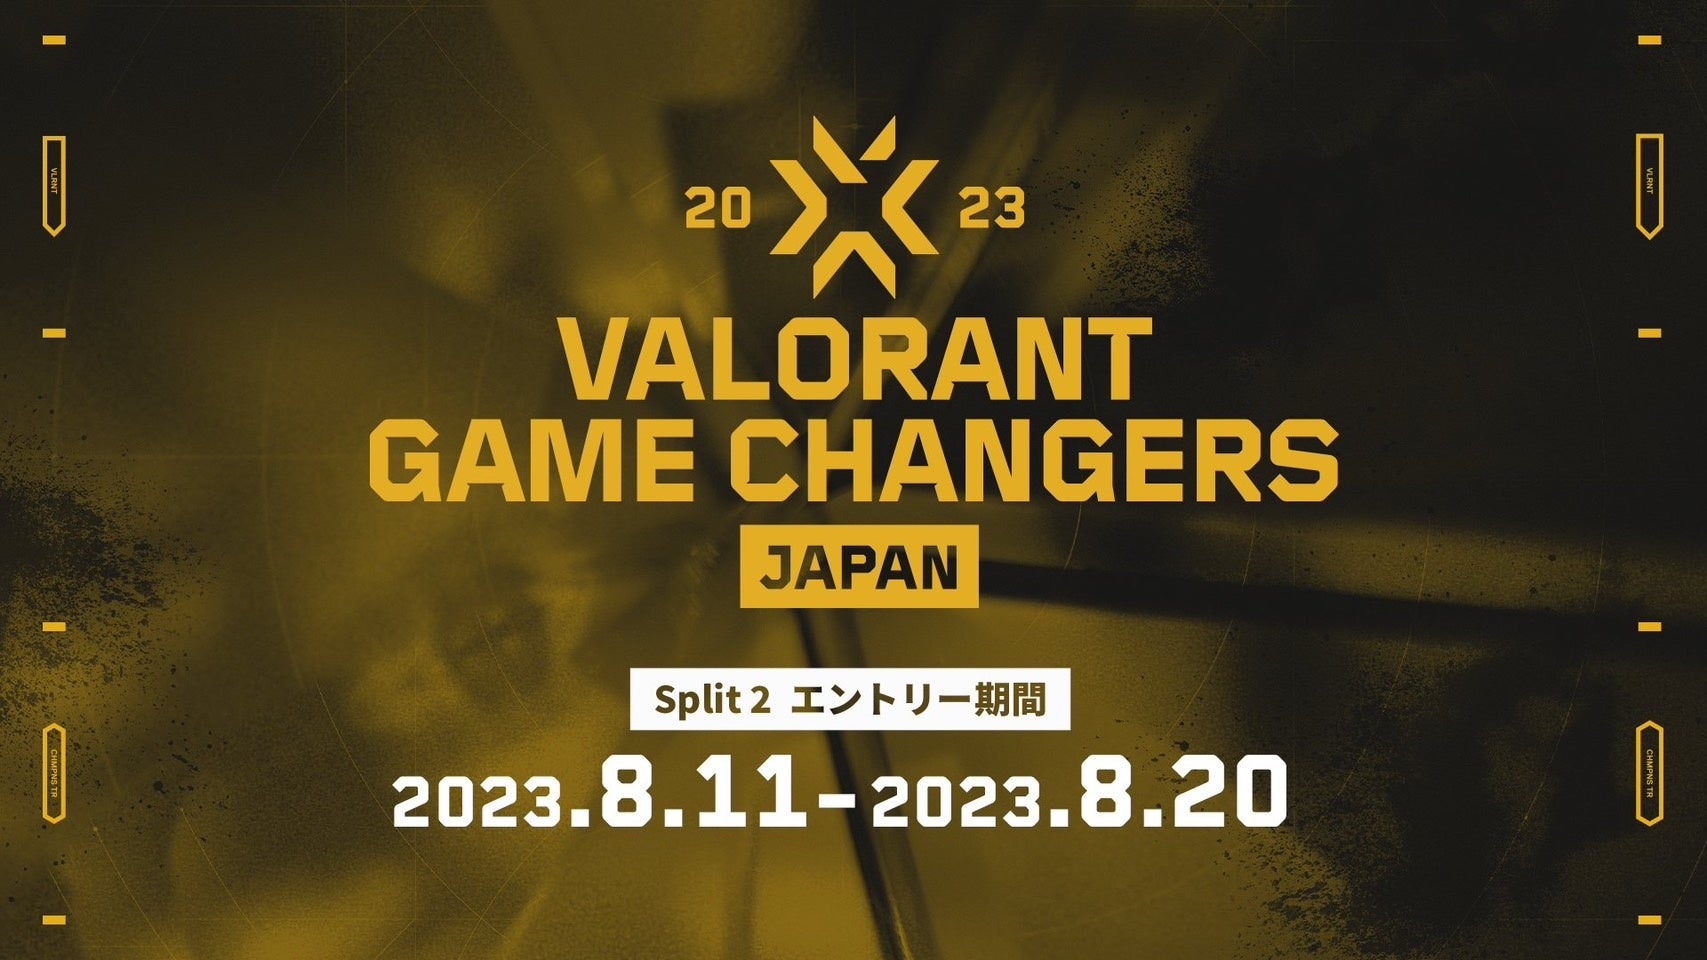 女性プレイヤーが活躍できる場を提供するために設立された「VALORANT Game Changers Japan 2023」Split 2 エントリー受付開始！